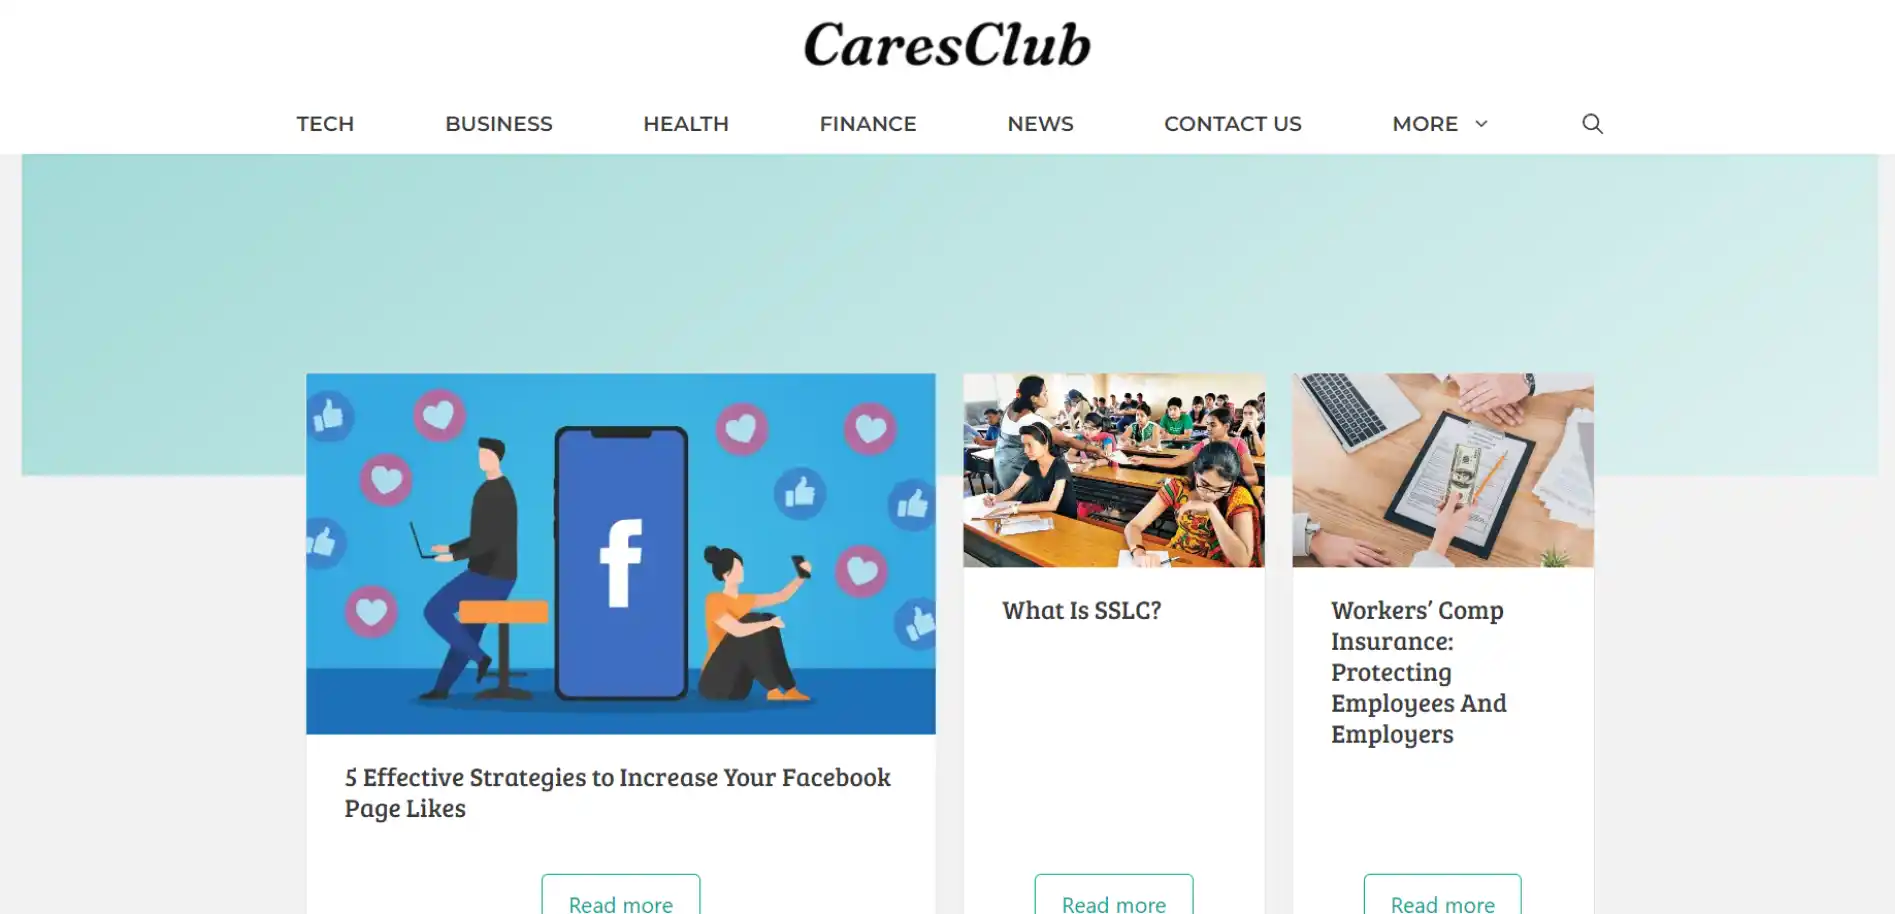 CaresClub.com